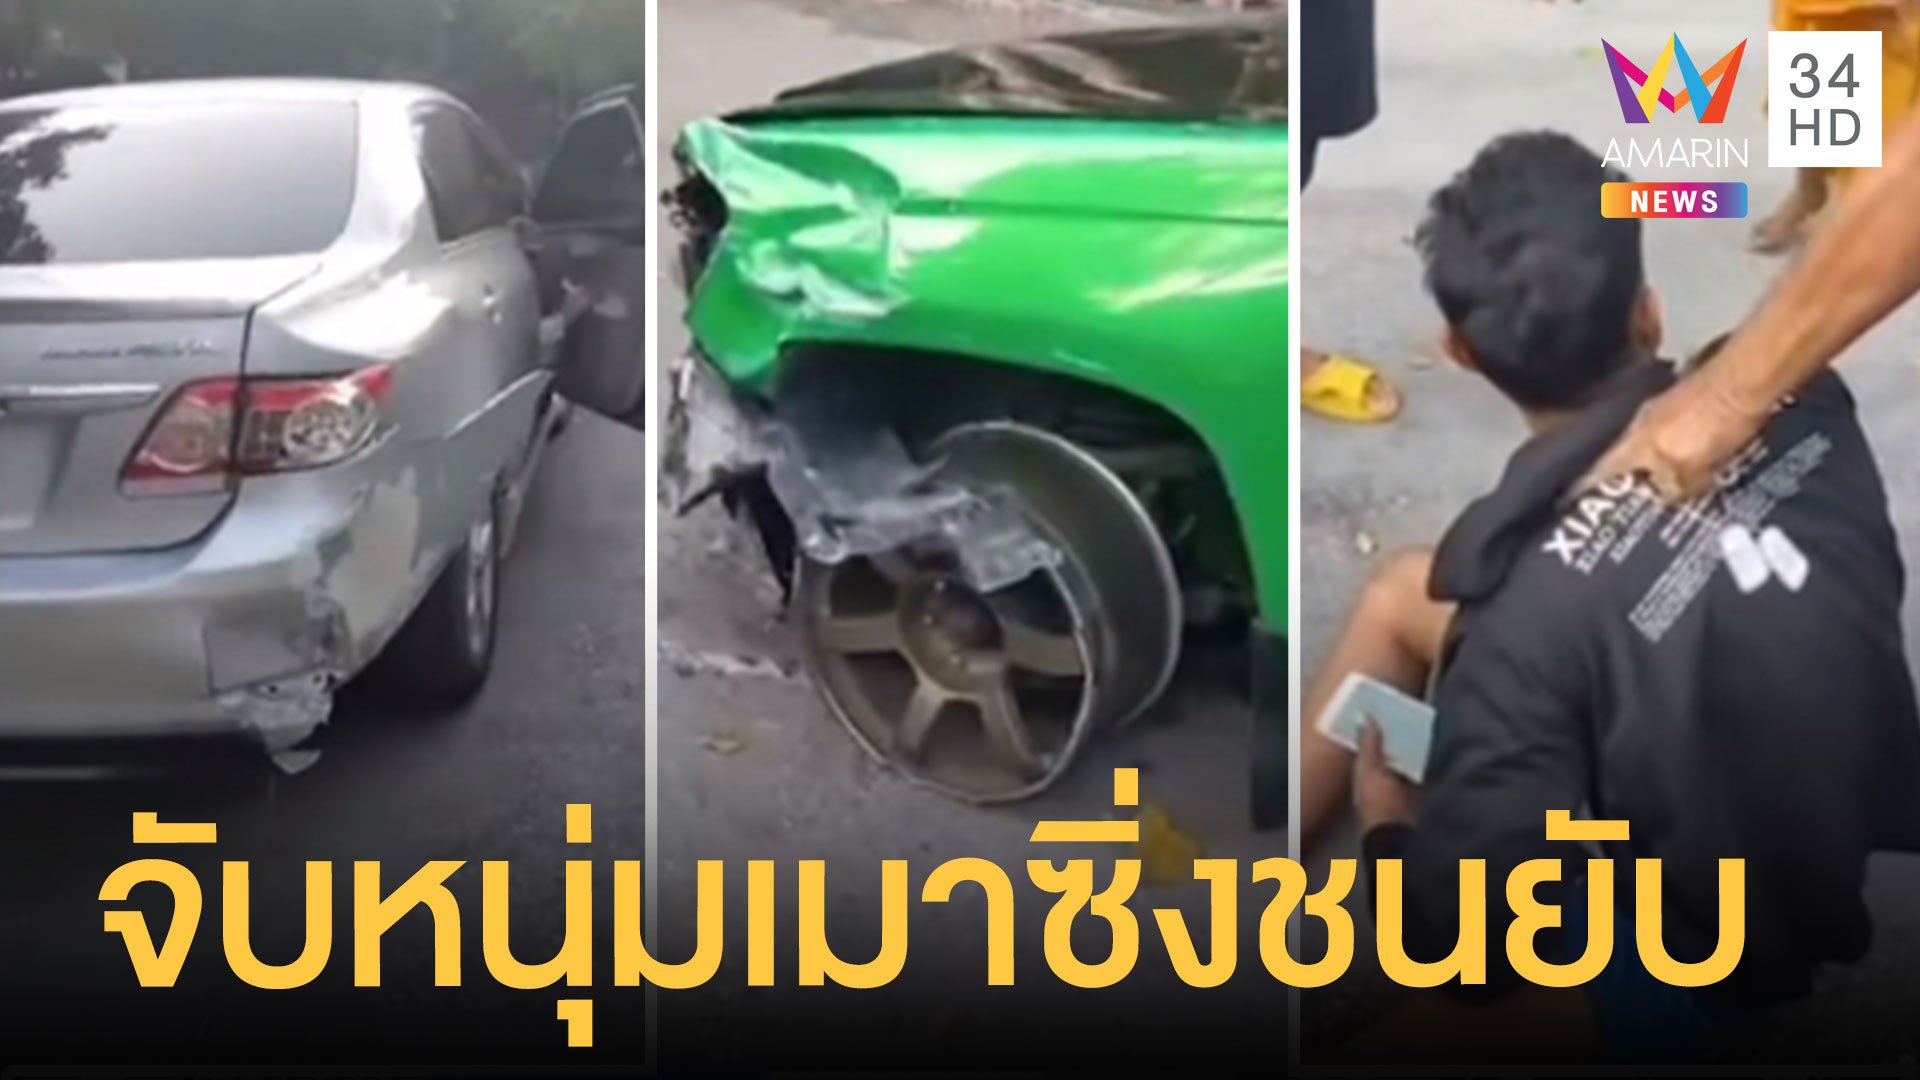 หนุ่มเมาซิ่งกระบะชนรถชาวบ้านจนรถพัง หนีเข้าวัดไล่จับตัวกันวุ่น | ข่าวอรุณอมรินทร์ | 22 พ.ย. 63 | AMARIN TVHD34